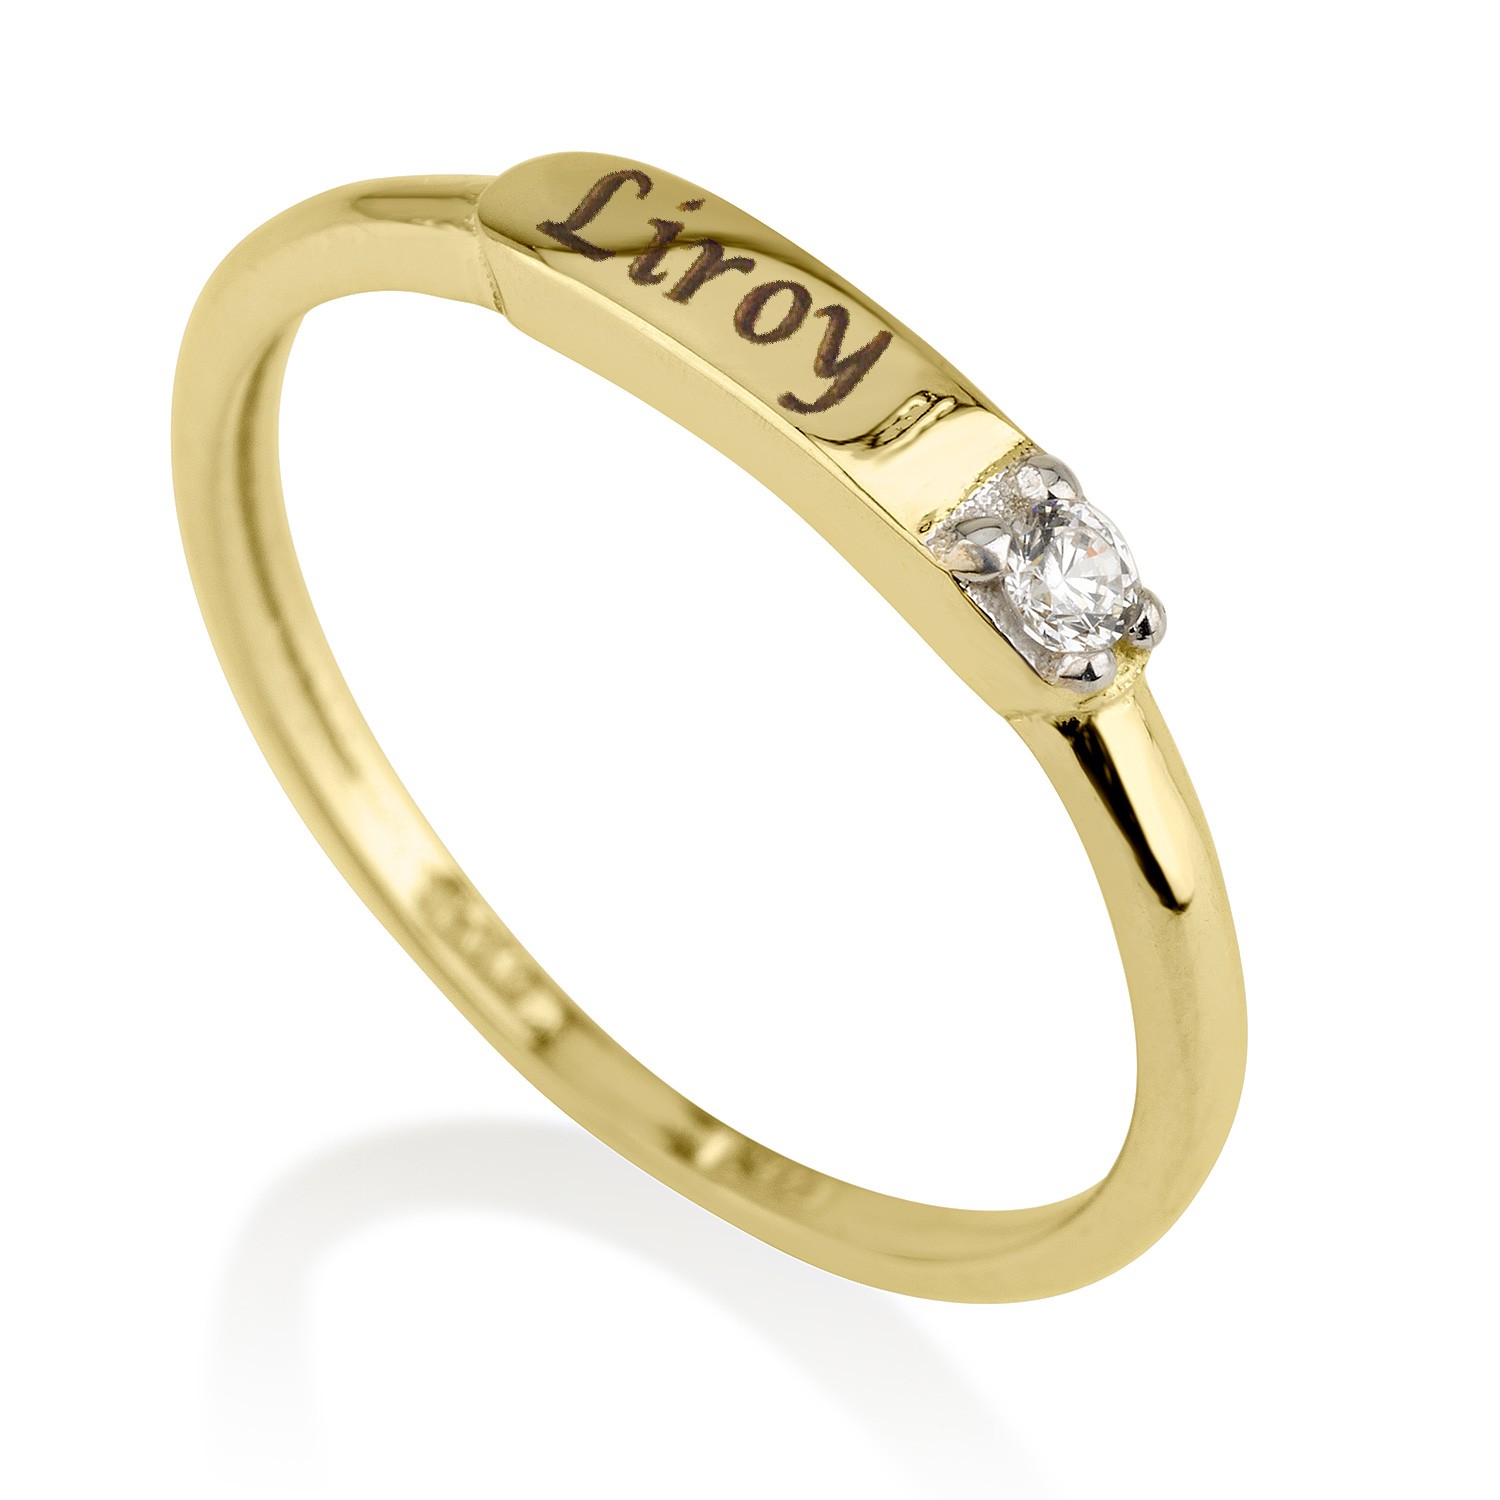  טבעת חריטה - זהב אמיתי 14 קראט בשיבוץ יהלום אמיתי טבעי דגם 3121